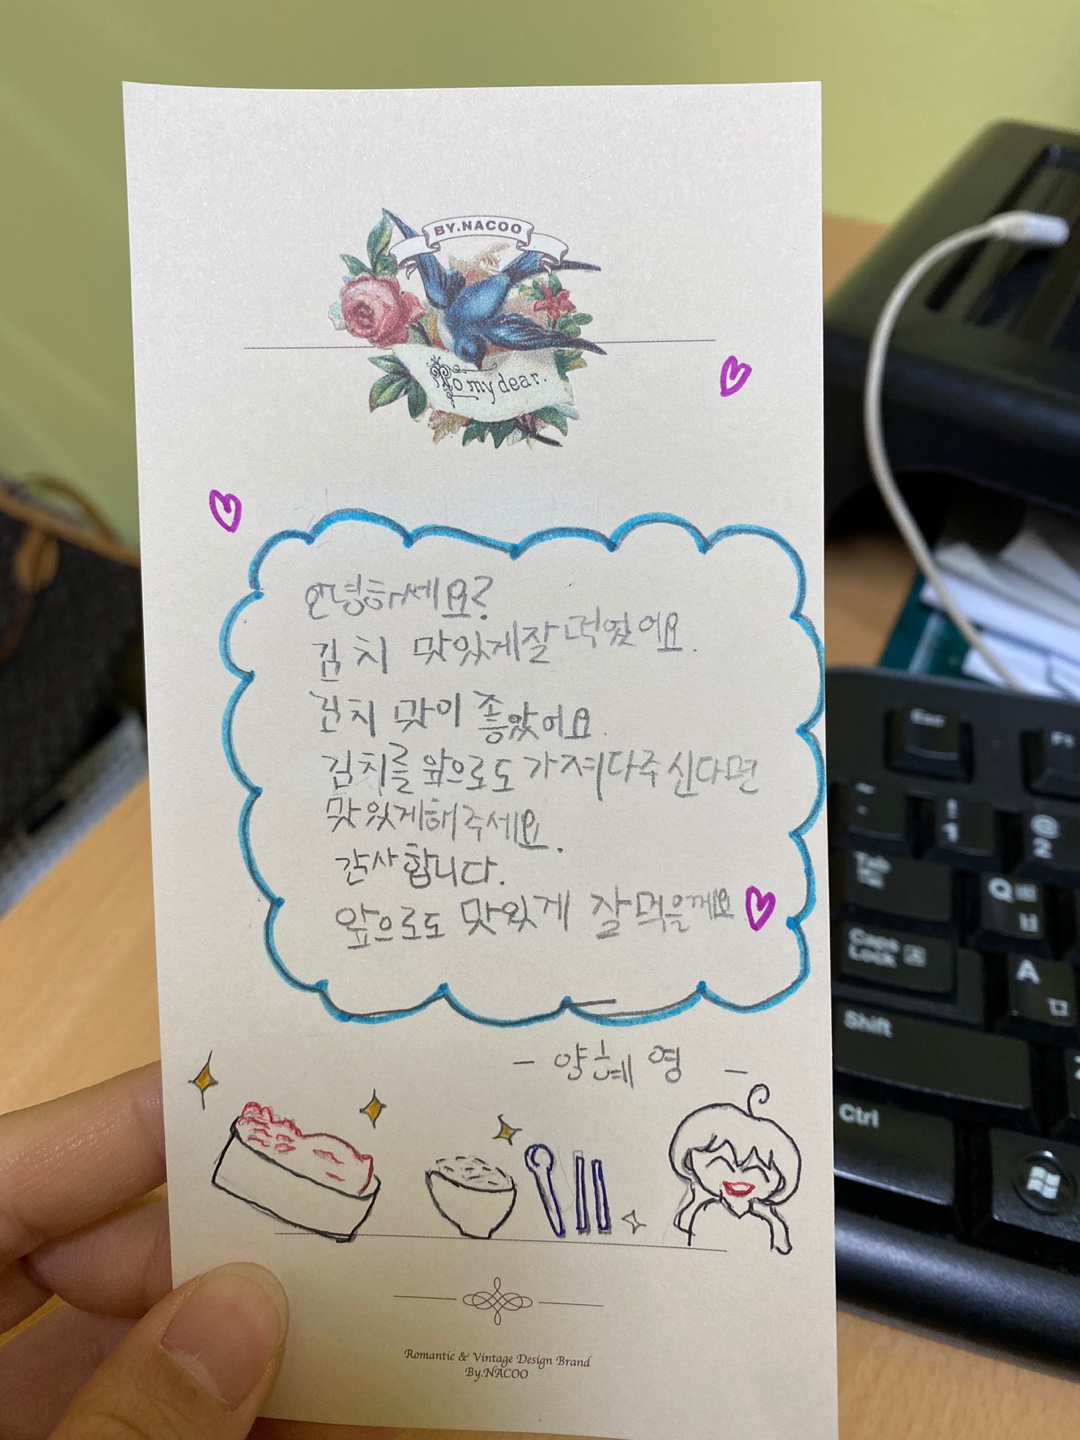 초등학교 6학년 양혜영 학생의 편지 입니다. 